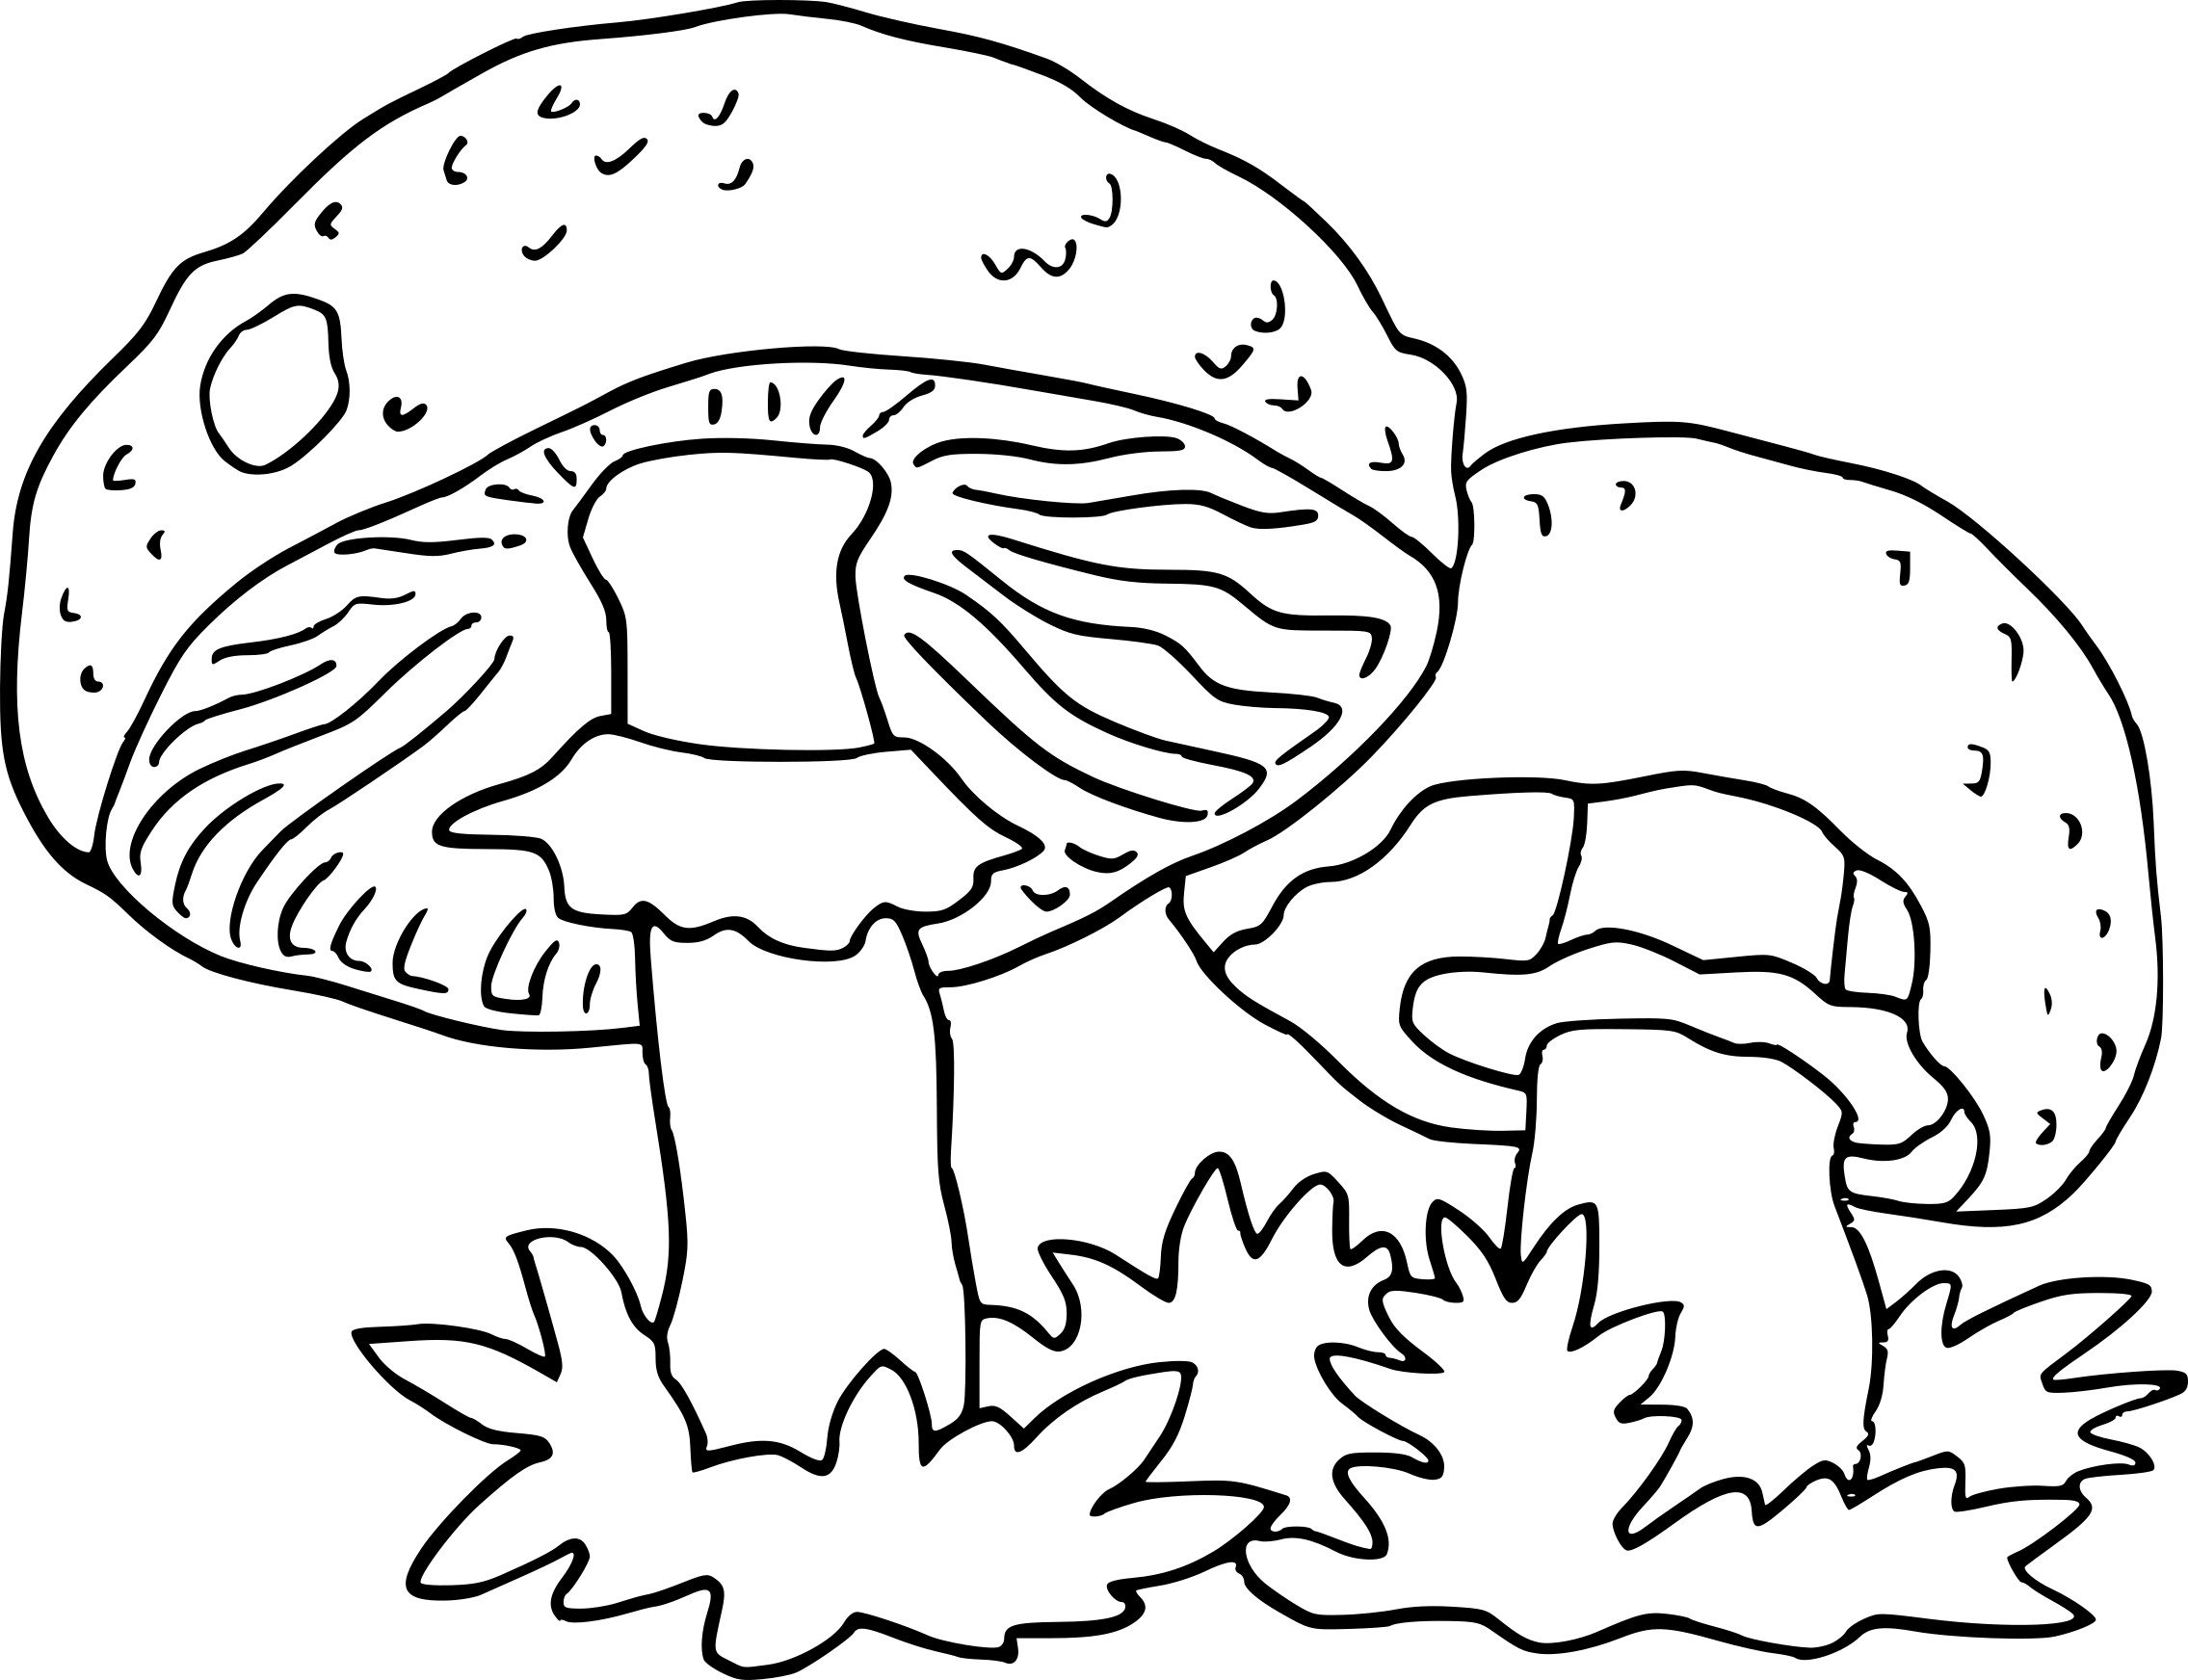 Раскраска грибы в лесу для детей